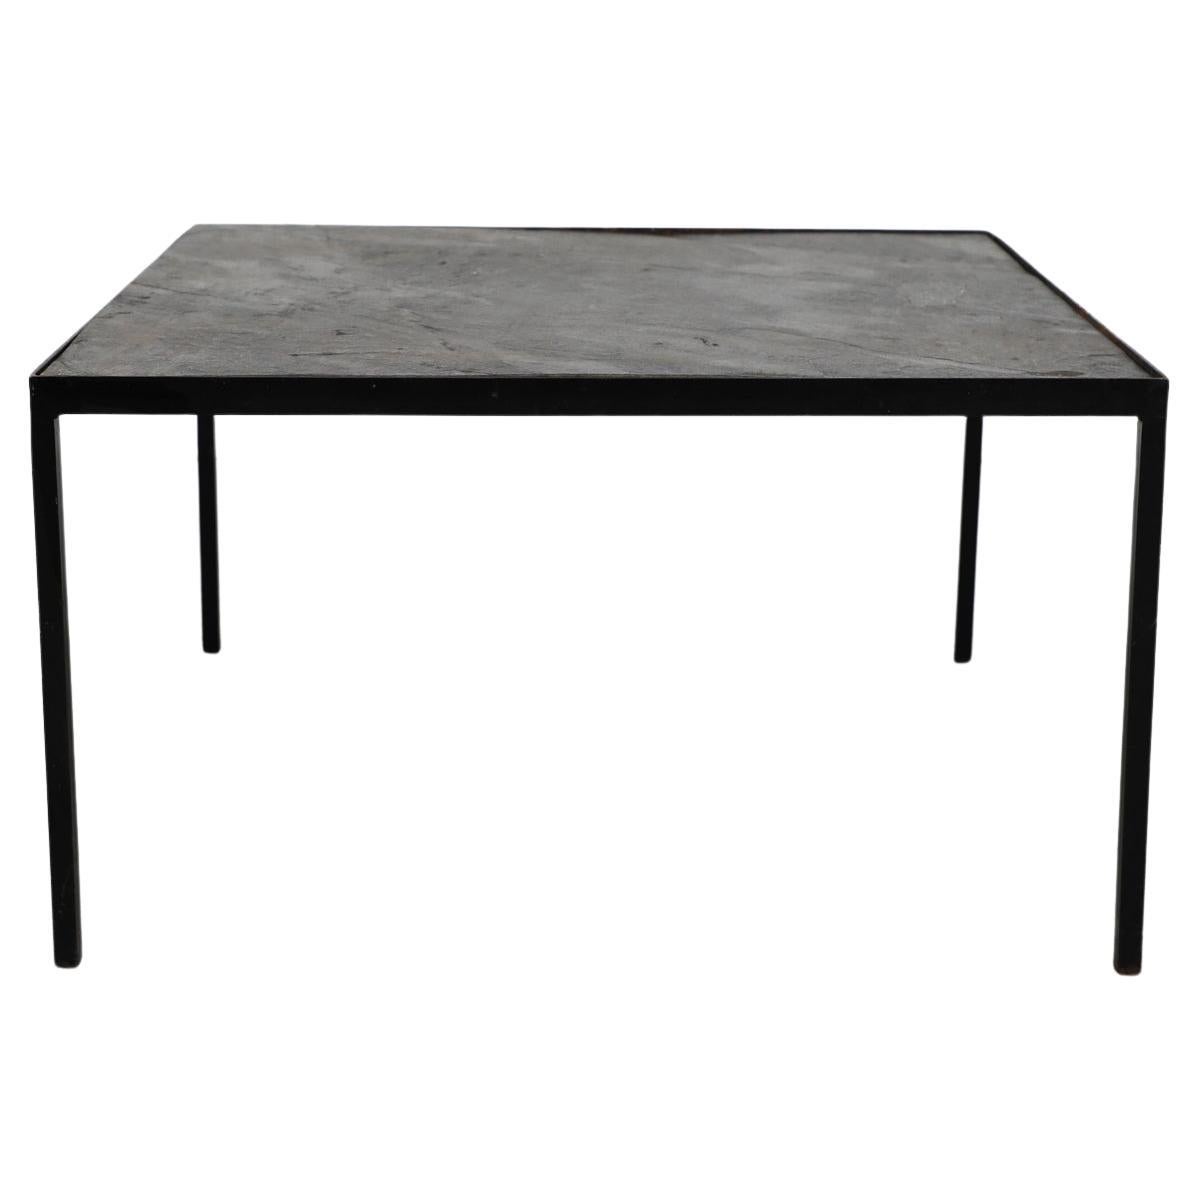 Table basse Artimeta avec base émaillée noire